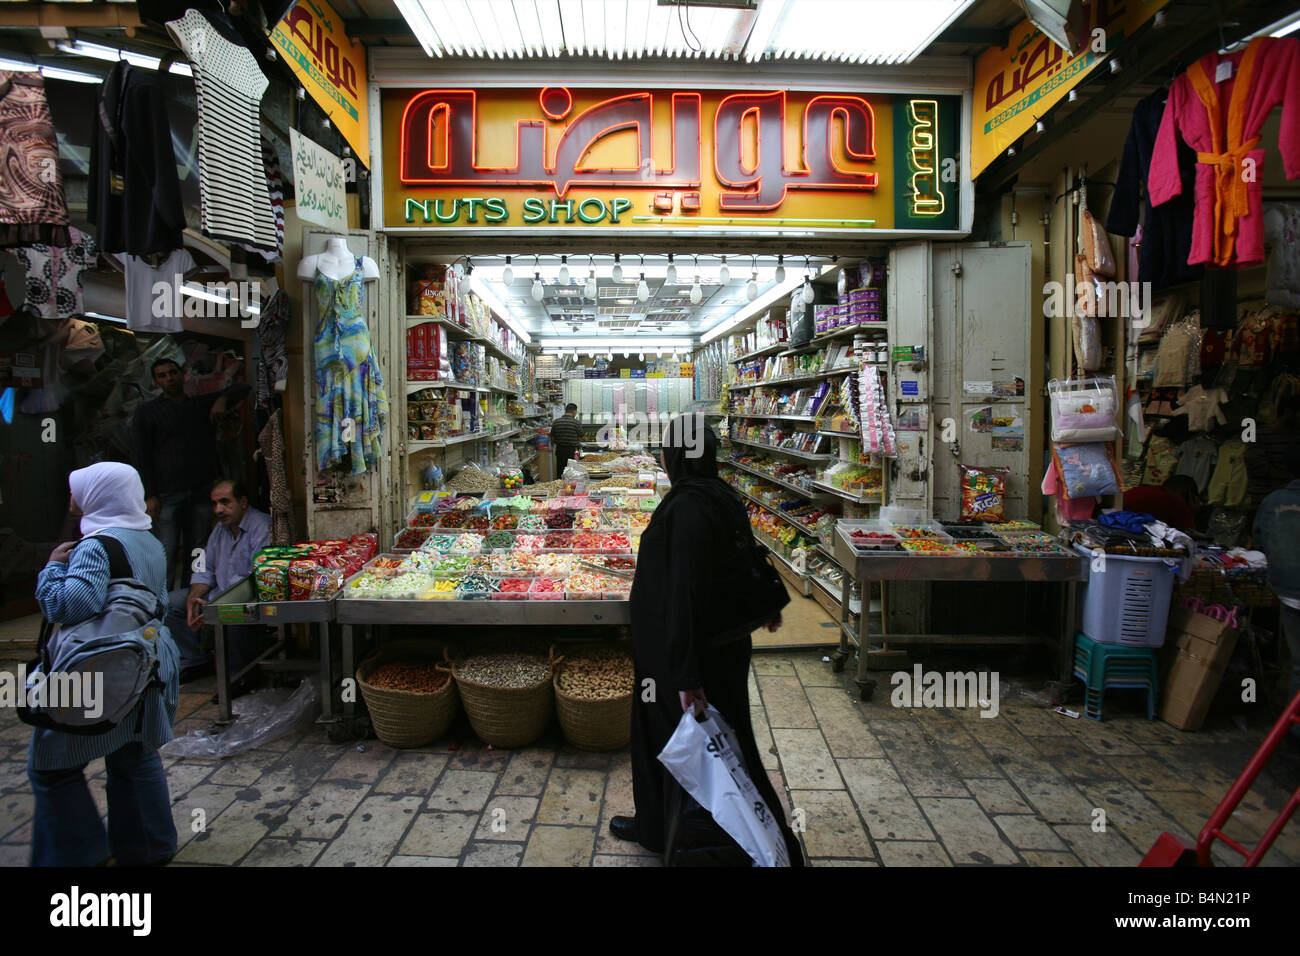 Une boutique qui vend des noix dans un marché dans la vieille ville de Jérusalem Banque D'Images